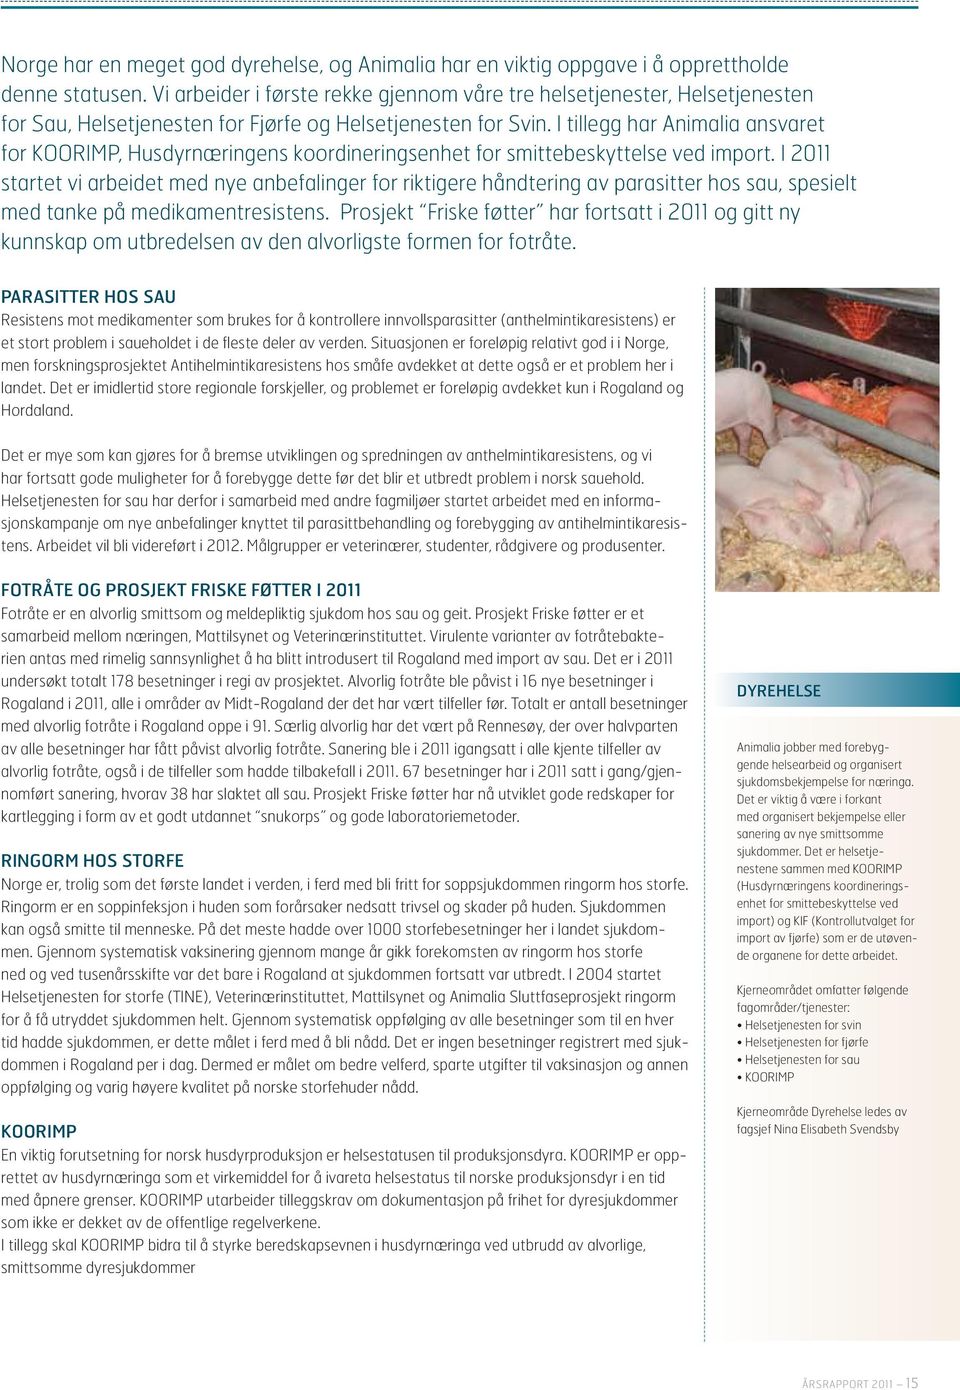 I tillegg har ansvaret for KOORIMP, Husdyrnæringens koordineringsenhet for smittebeskyttelse ved import.